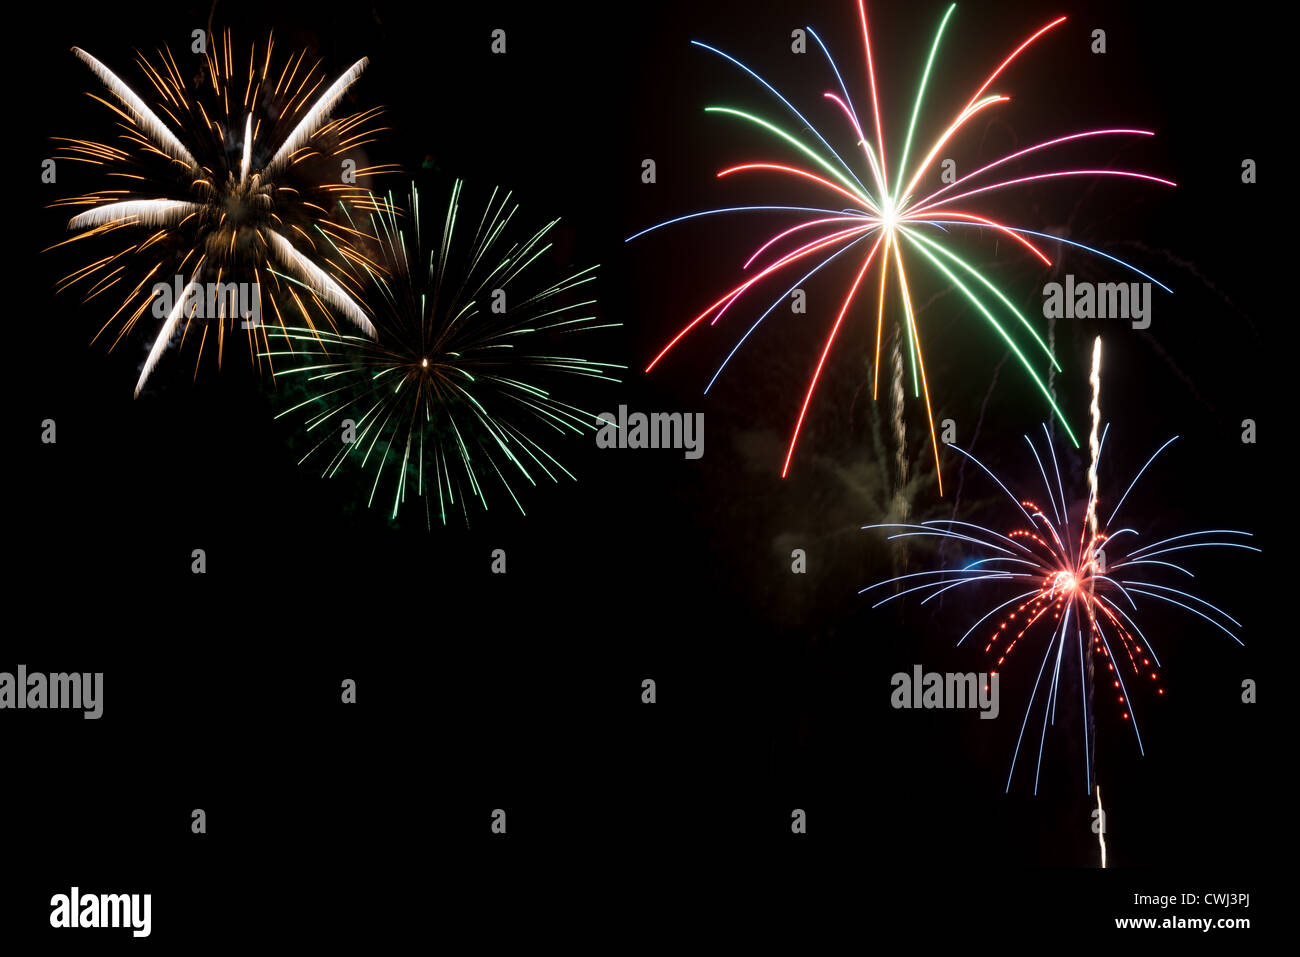 Fireworks on Fourth of July Stock Photo - Image of celebration, eagle:  32276648